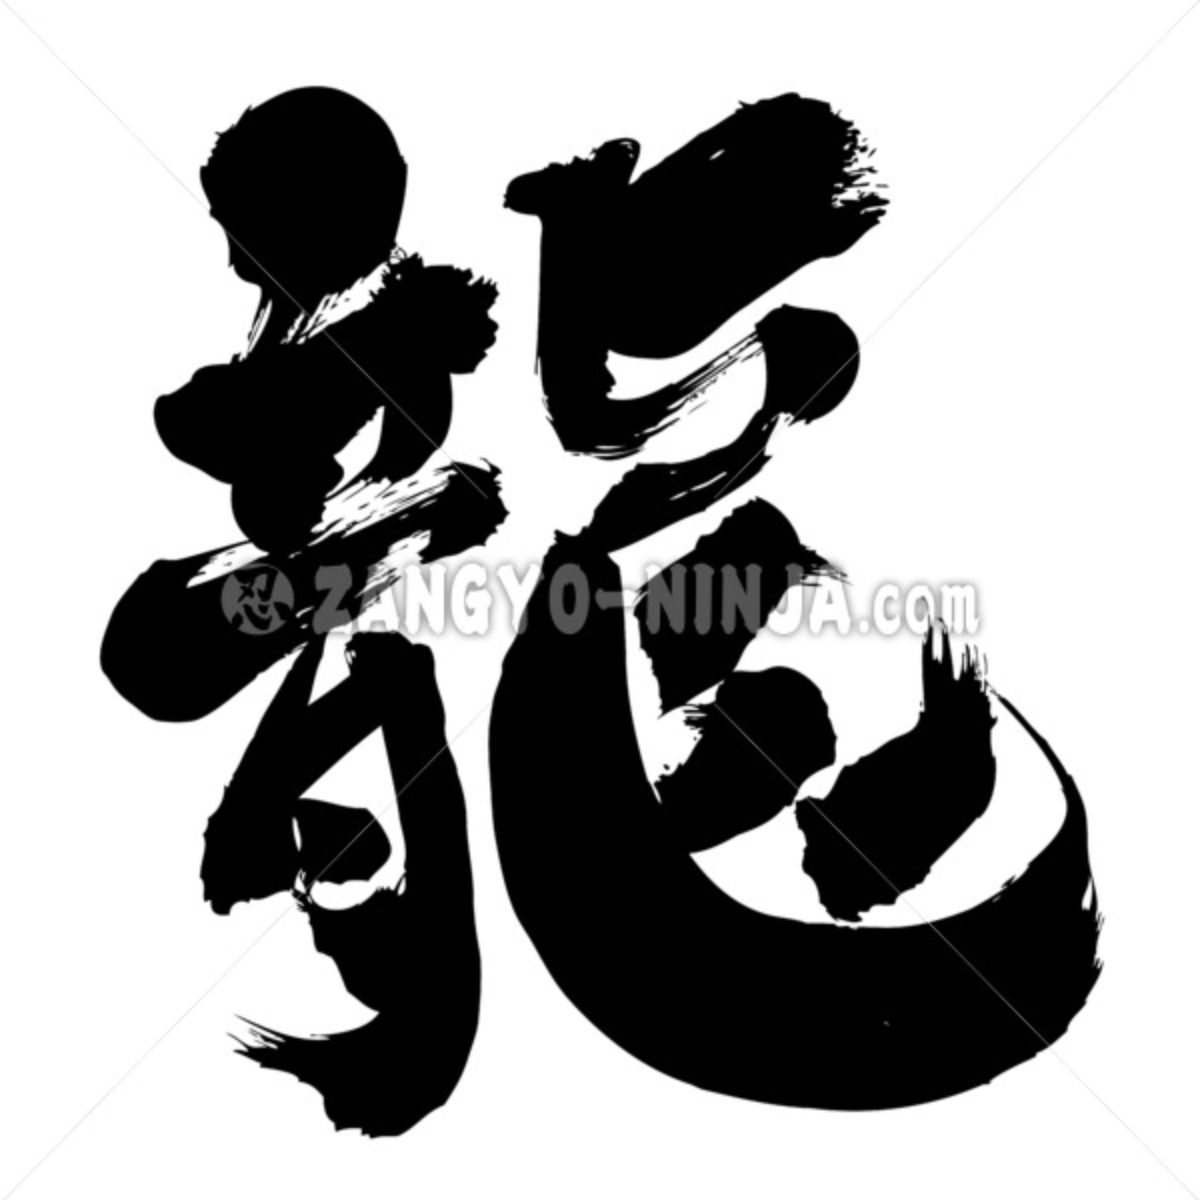 dragon in kanji brushed